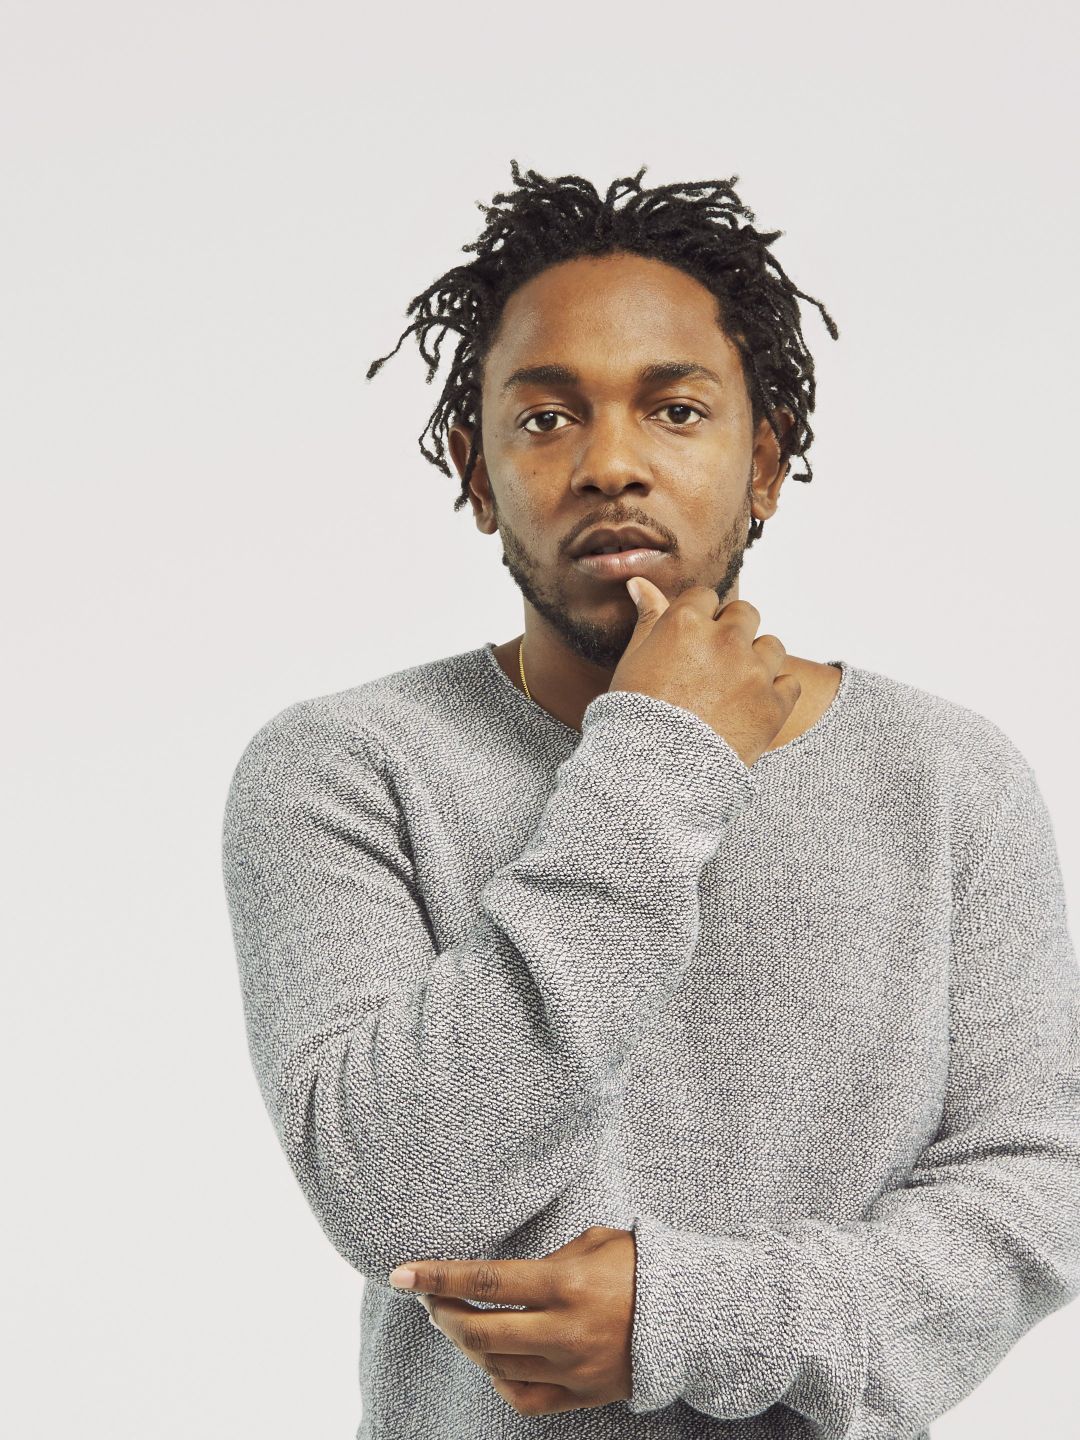 Kendrick Lamar education